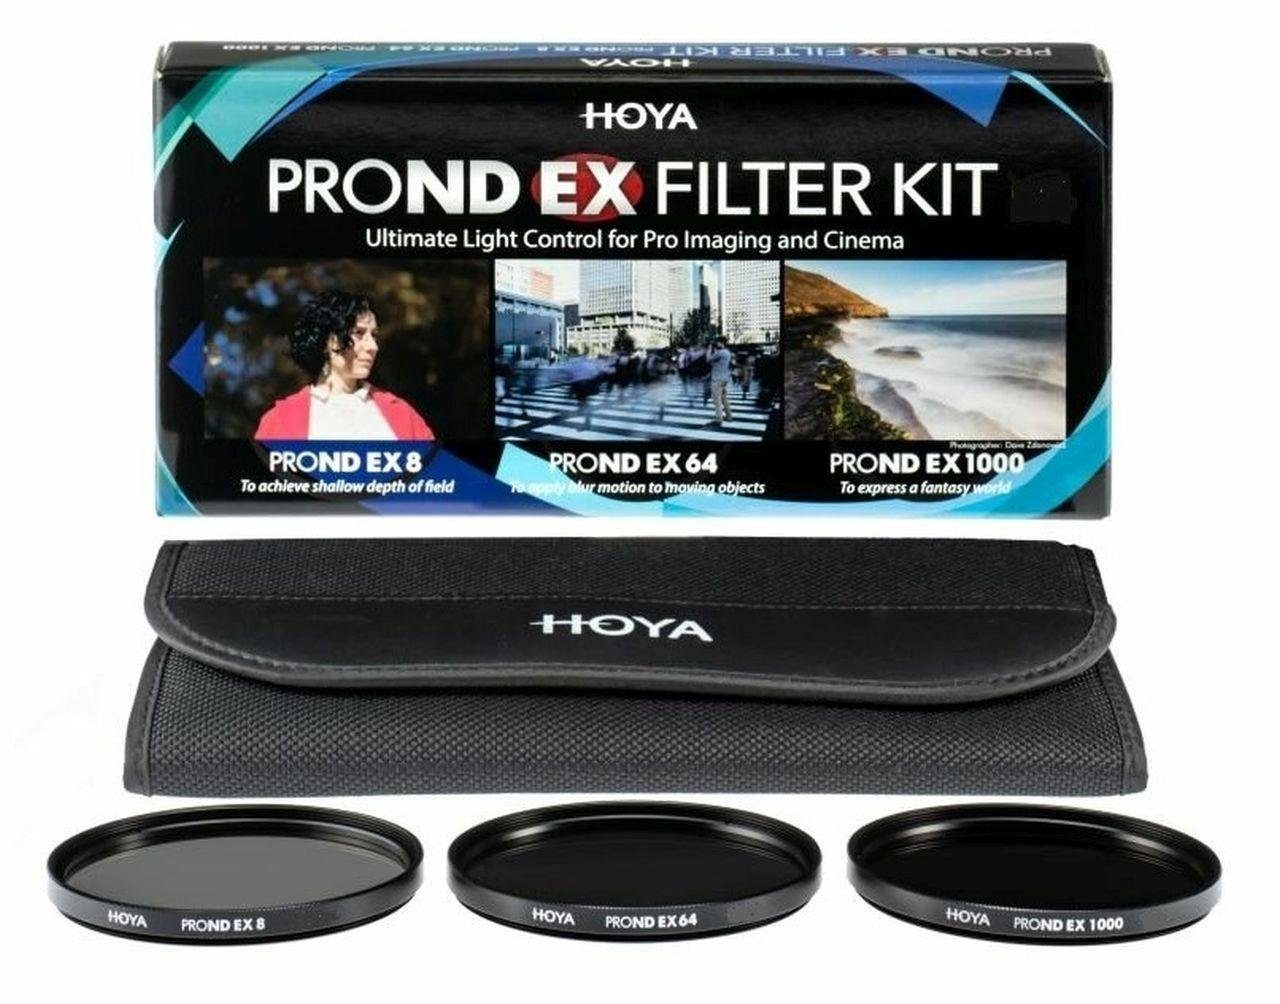 Hoya PROND EX ND Filter Set 8/64/1000 55mm Objektivzubehör